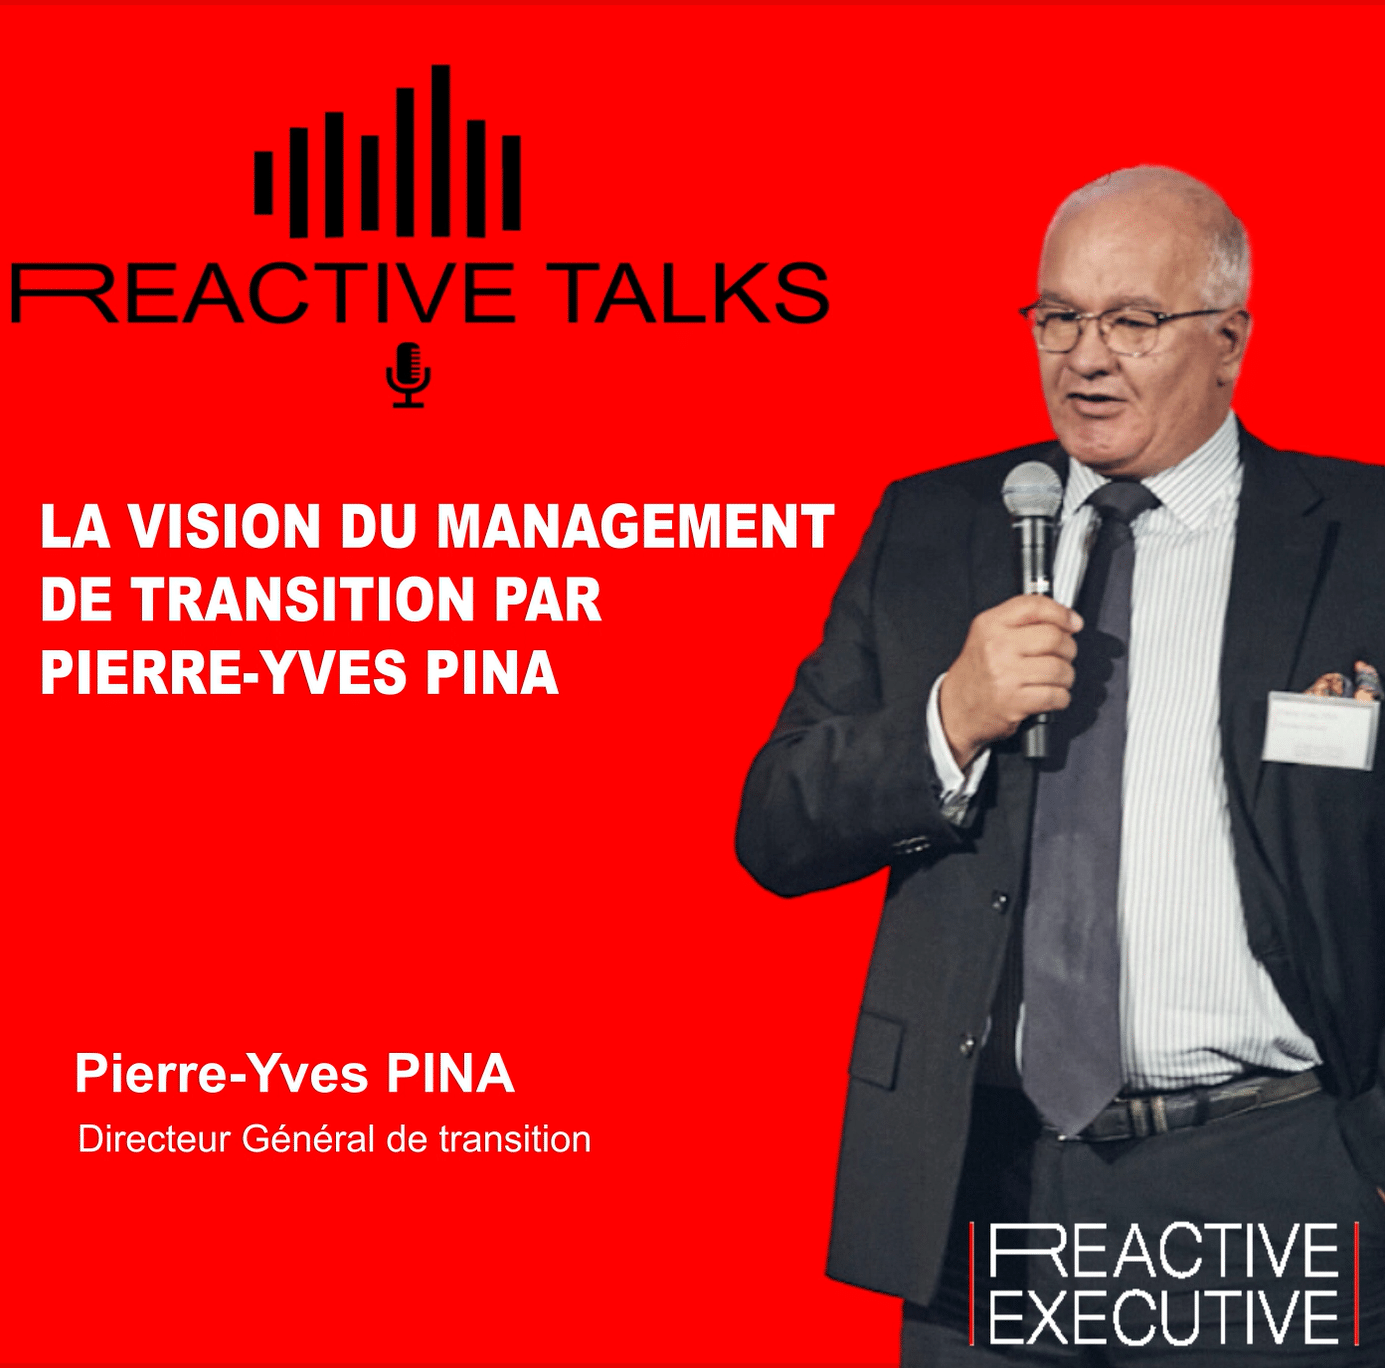 REACTIVE TALKS - LA VISION DU MANAGEMENT DE TRANSITION PAR PIERRE-YVES PINA